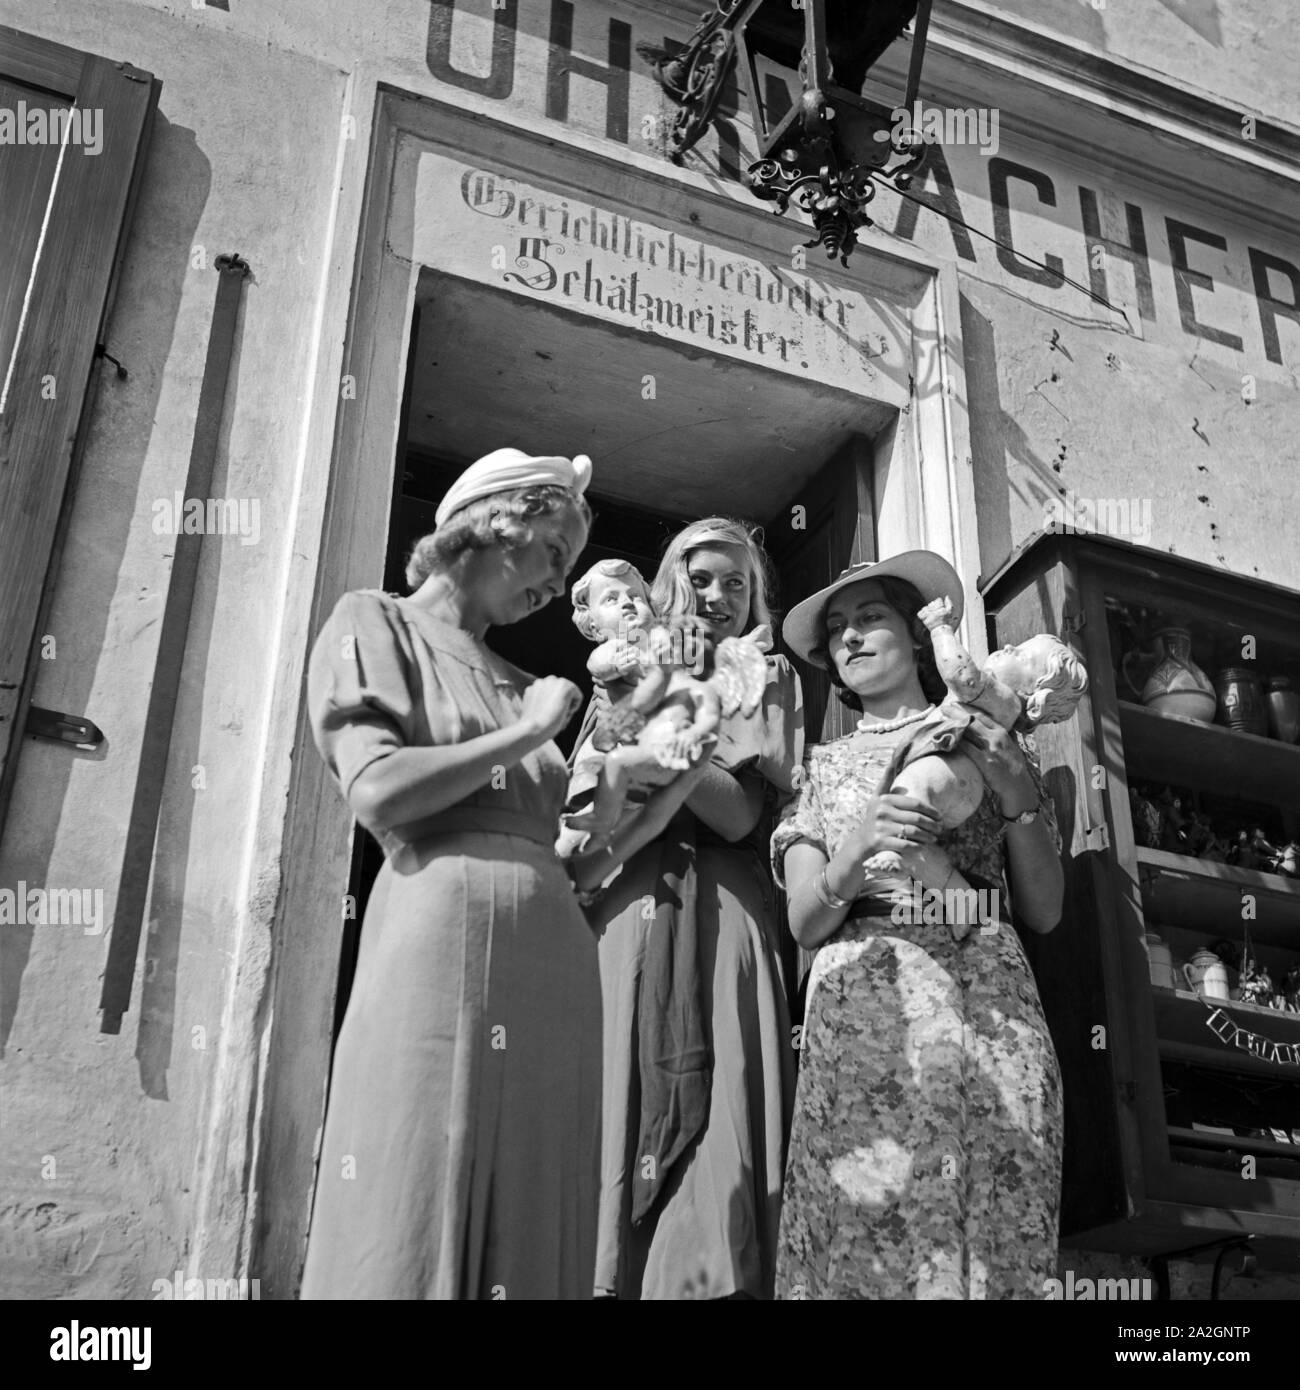 Drei junge Frauen haben in einem uhrmachergeschäft Kunsthandwerksgegenstände eingekauft, Österreich 1930er Jahre. Drei junge Frauen kauften einige Kunsthandwerk Reihen bei einem Uhrmacher shop, Österreich 1930. Stockfoto